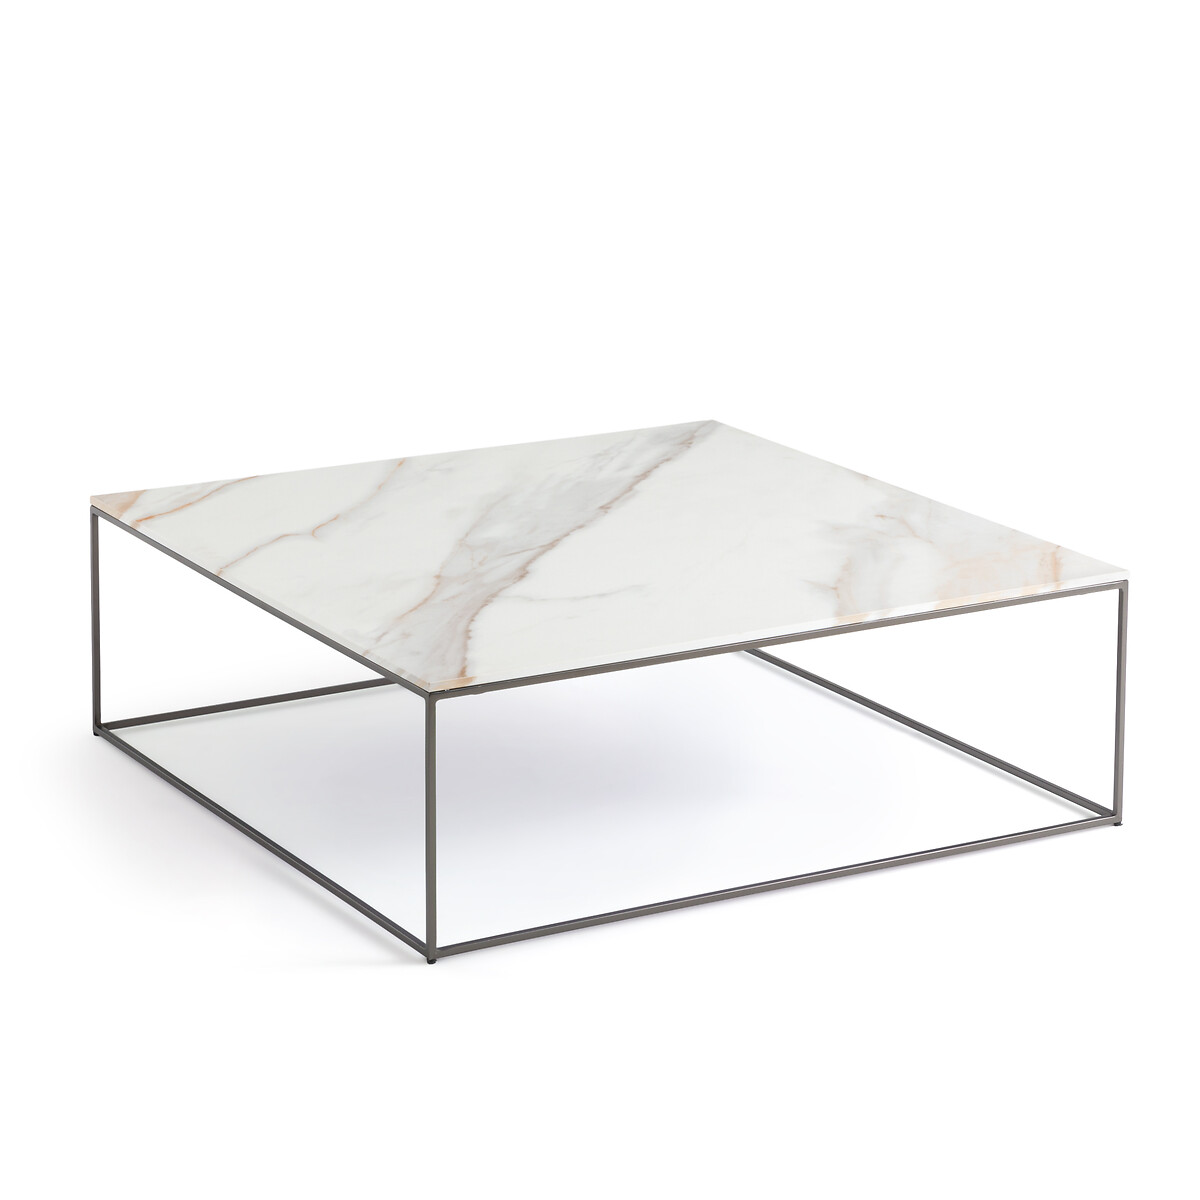 Стол журнальный из керамики Mahaut единый размер белый стол журнальный из терраццо madina единый размер белый